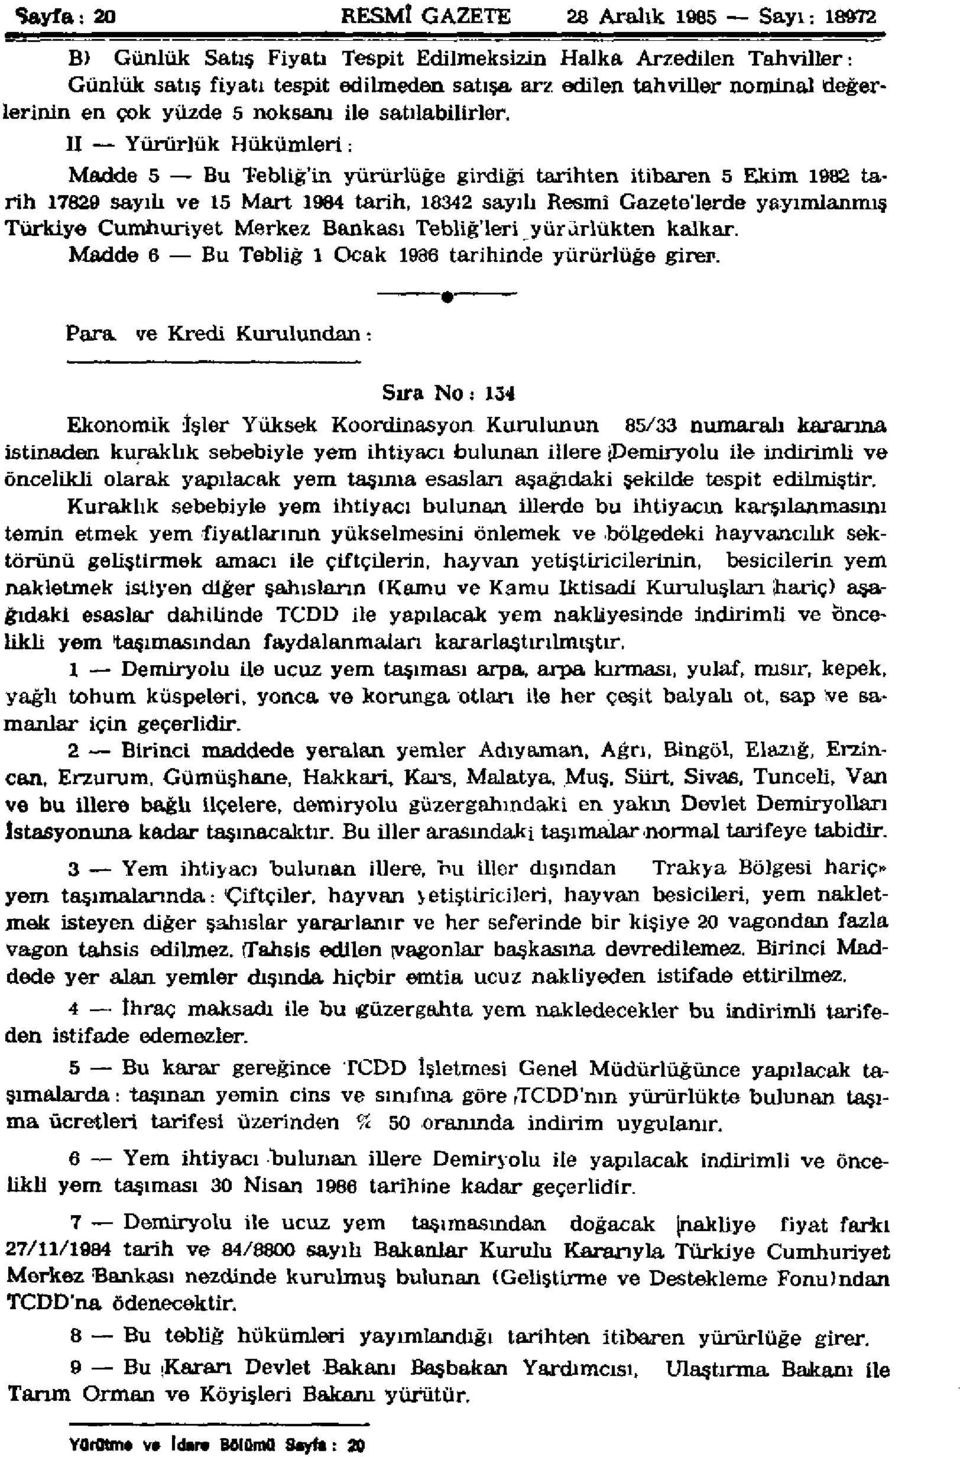 II Yürürlük Hükümleri: Madde 5 Bu Tebliğ'in yürürlüğe girdiği tarihten itibaren 5 Ekim 1982 tarih 17829 sayılı ve 15 Mart 1984 tarih, 18342 sayılı Resmî Gazete'Ierde yayımlanmış Türkiye Cumhuriyet